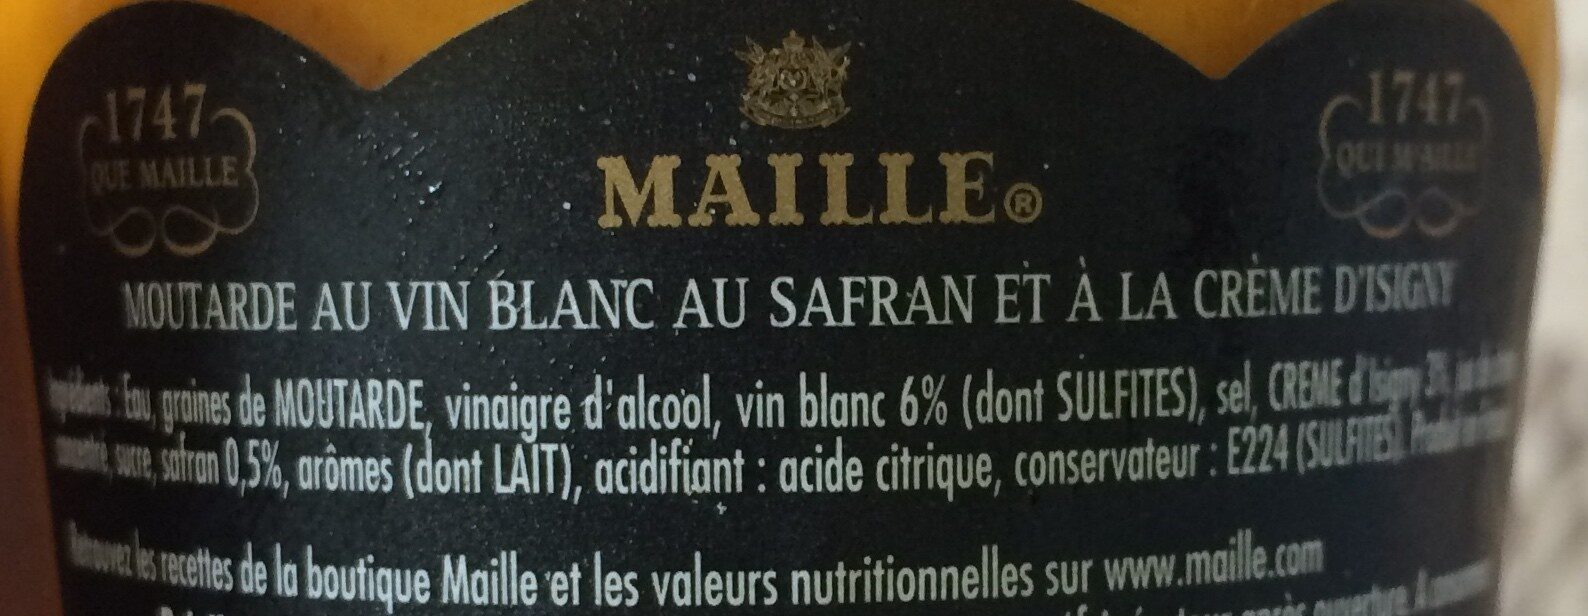 Maille Moutarde Safran et Crème d'Isigny 108g - Ingredients - fr